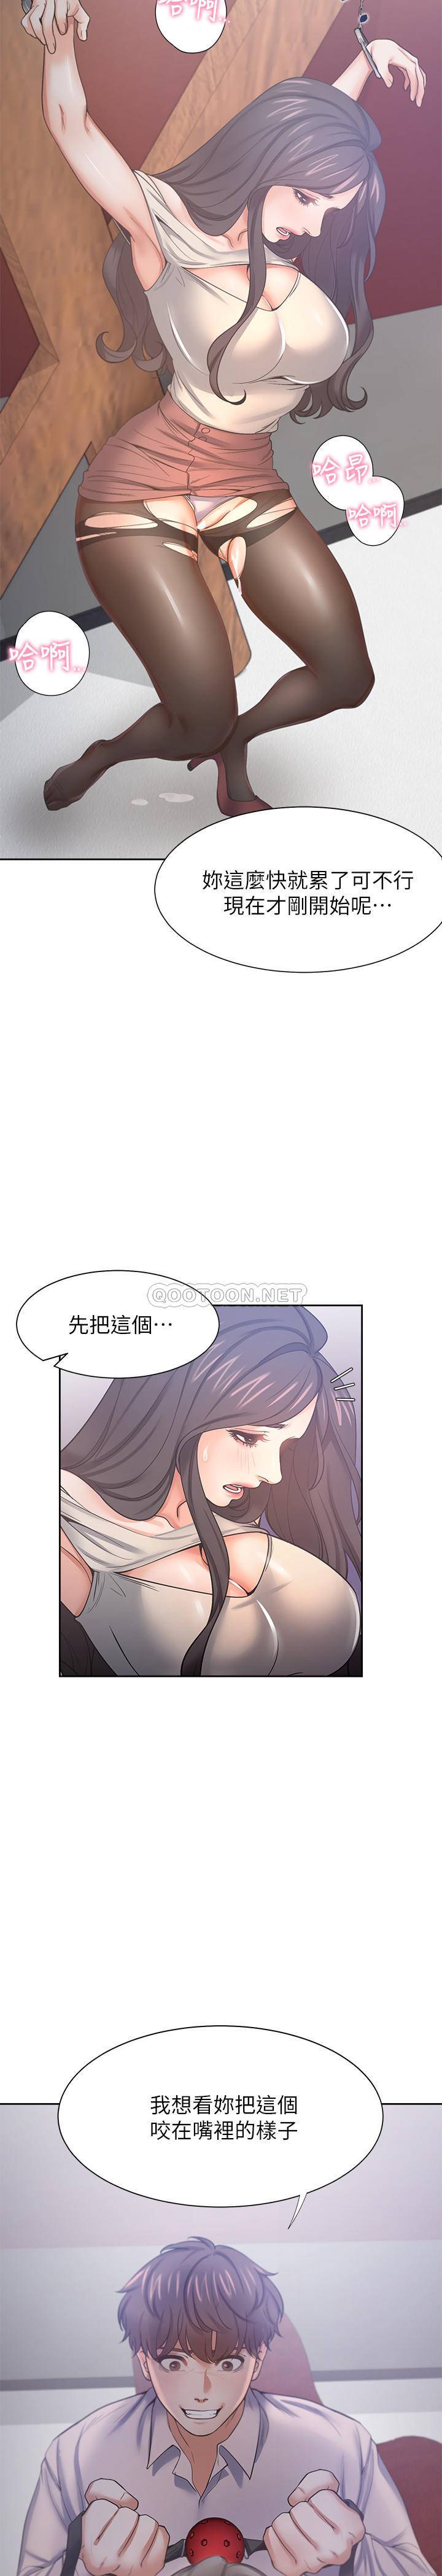 韩国污漫画 愛火難耐 第42话-被情趣用品吓到的芝熙 21